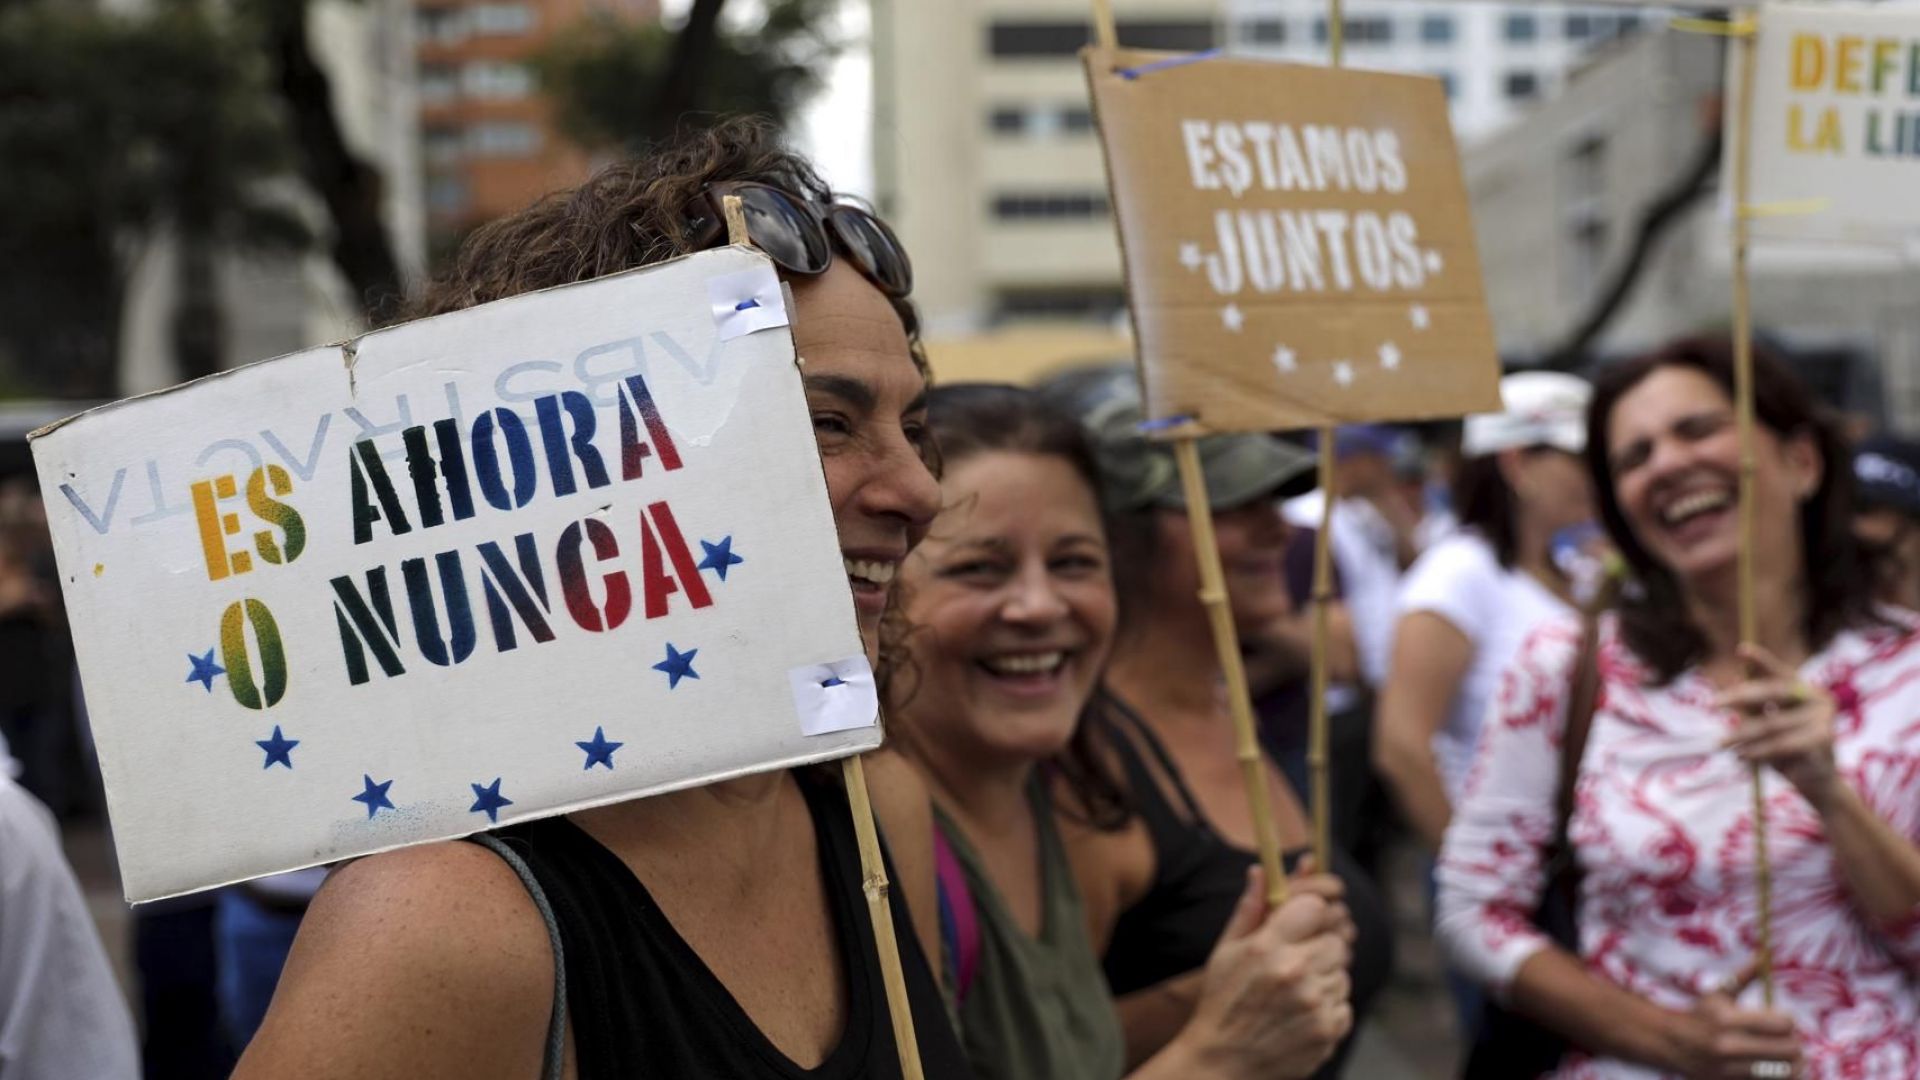 Външнополитическият представител на Европейския съюз Федерика Могерини прикани Венецуела да